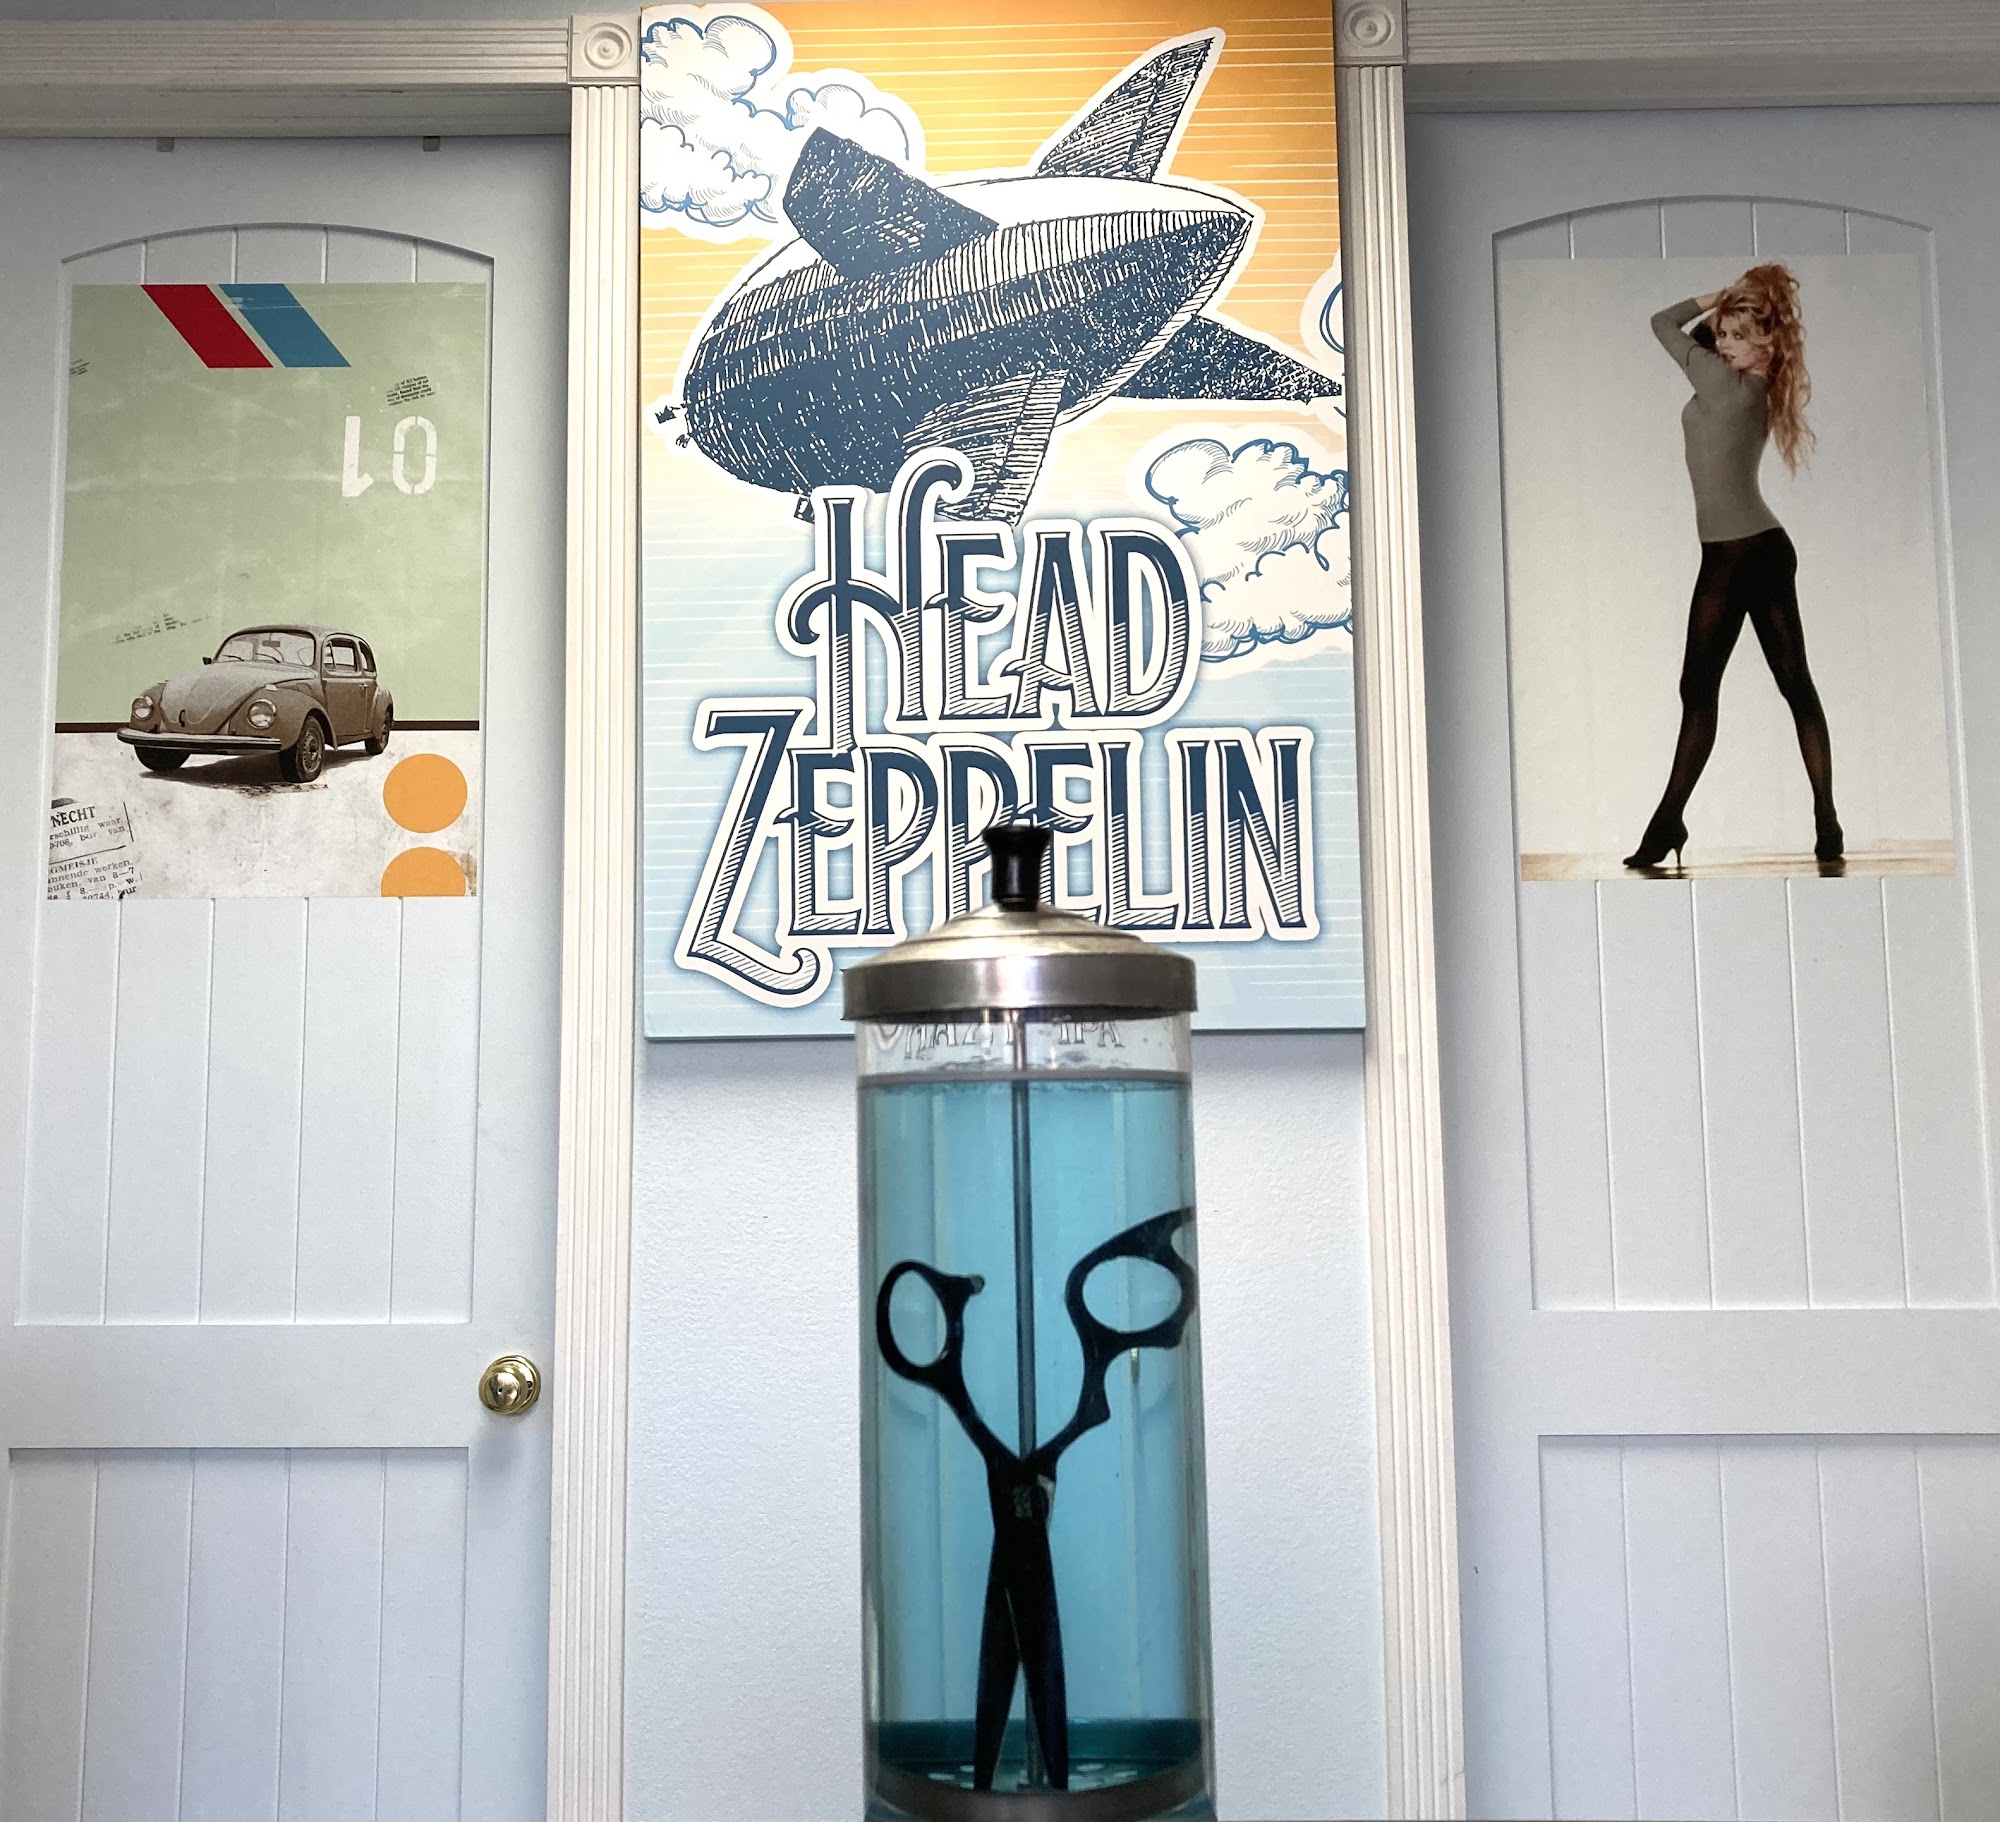 Head Zeppelin